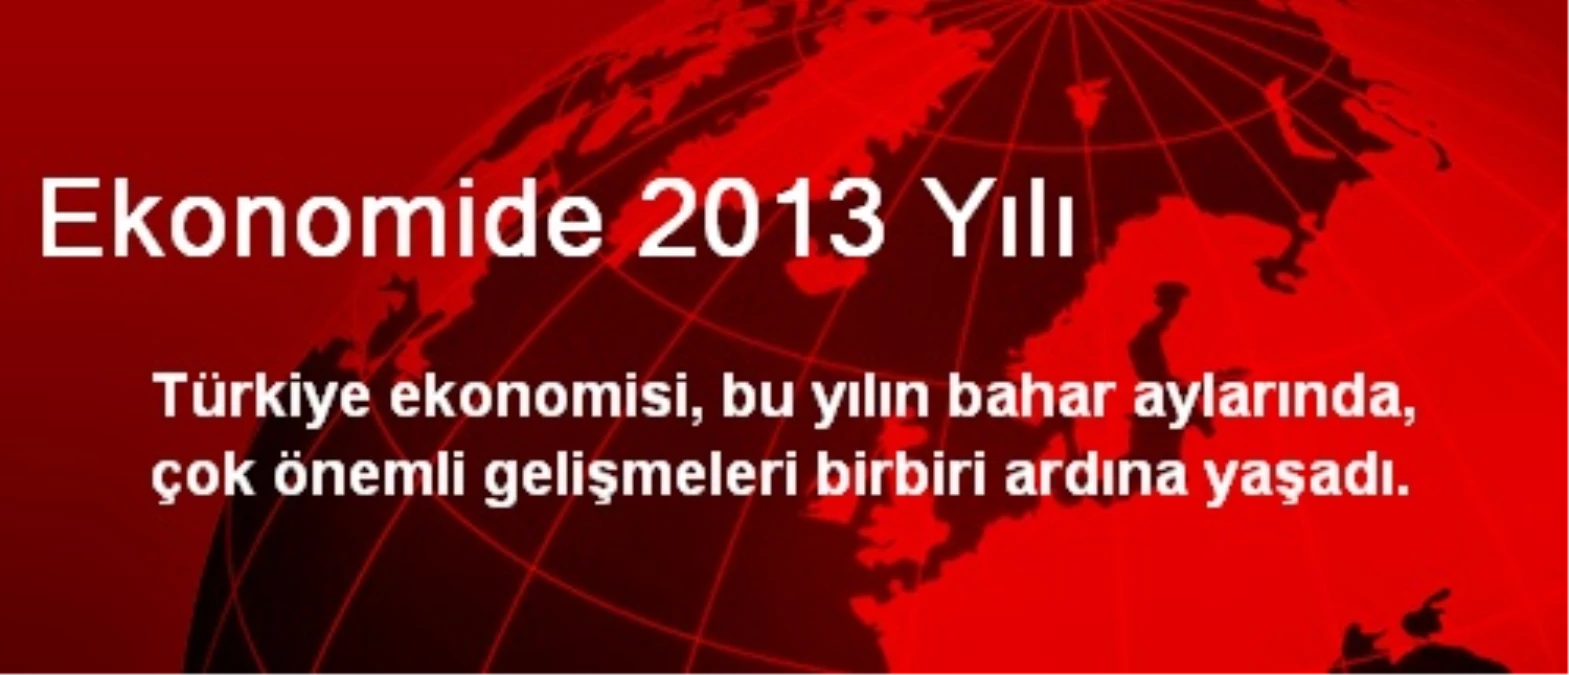 Ekonomide 2013 Yılı